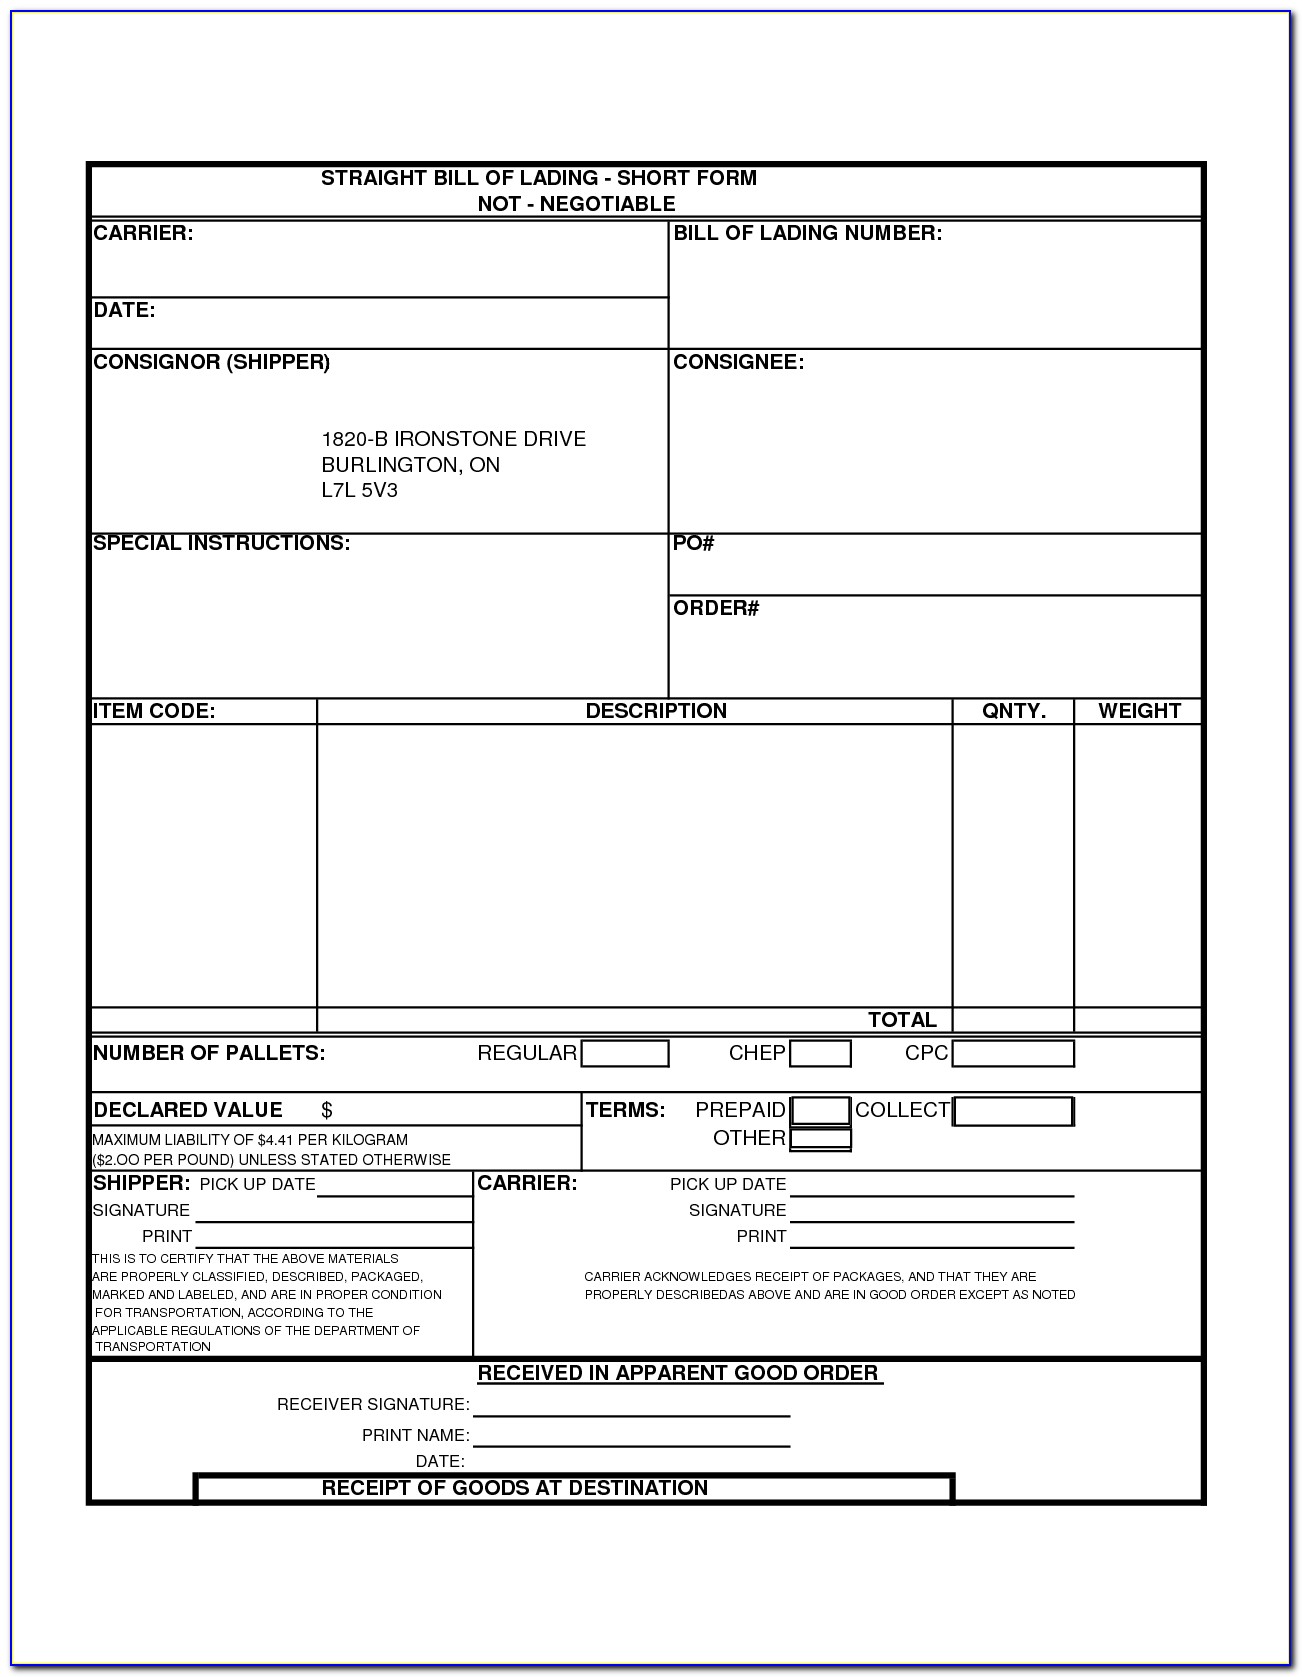 blank-form-bill-of-lading-form-resume-examples-j3dwv6lklp